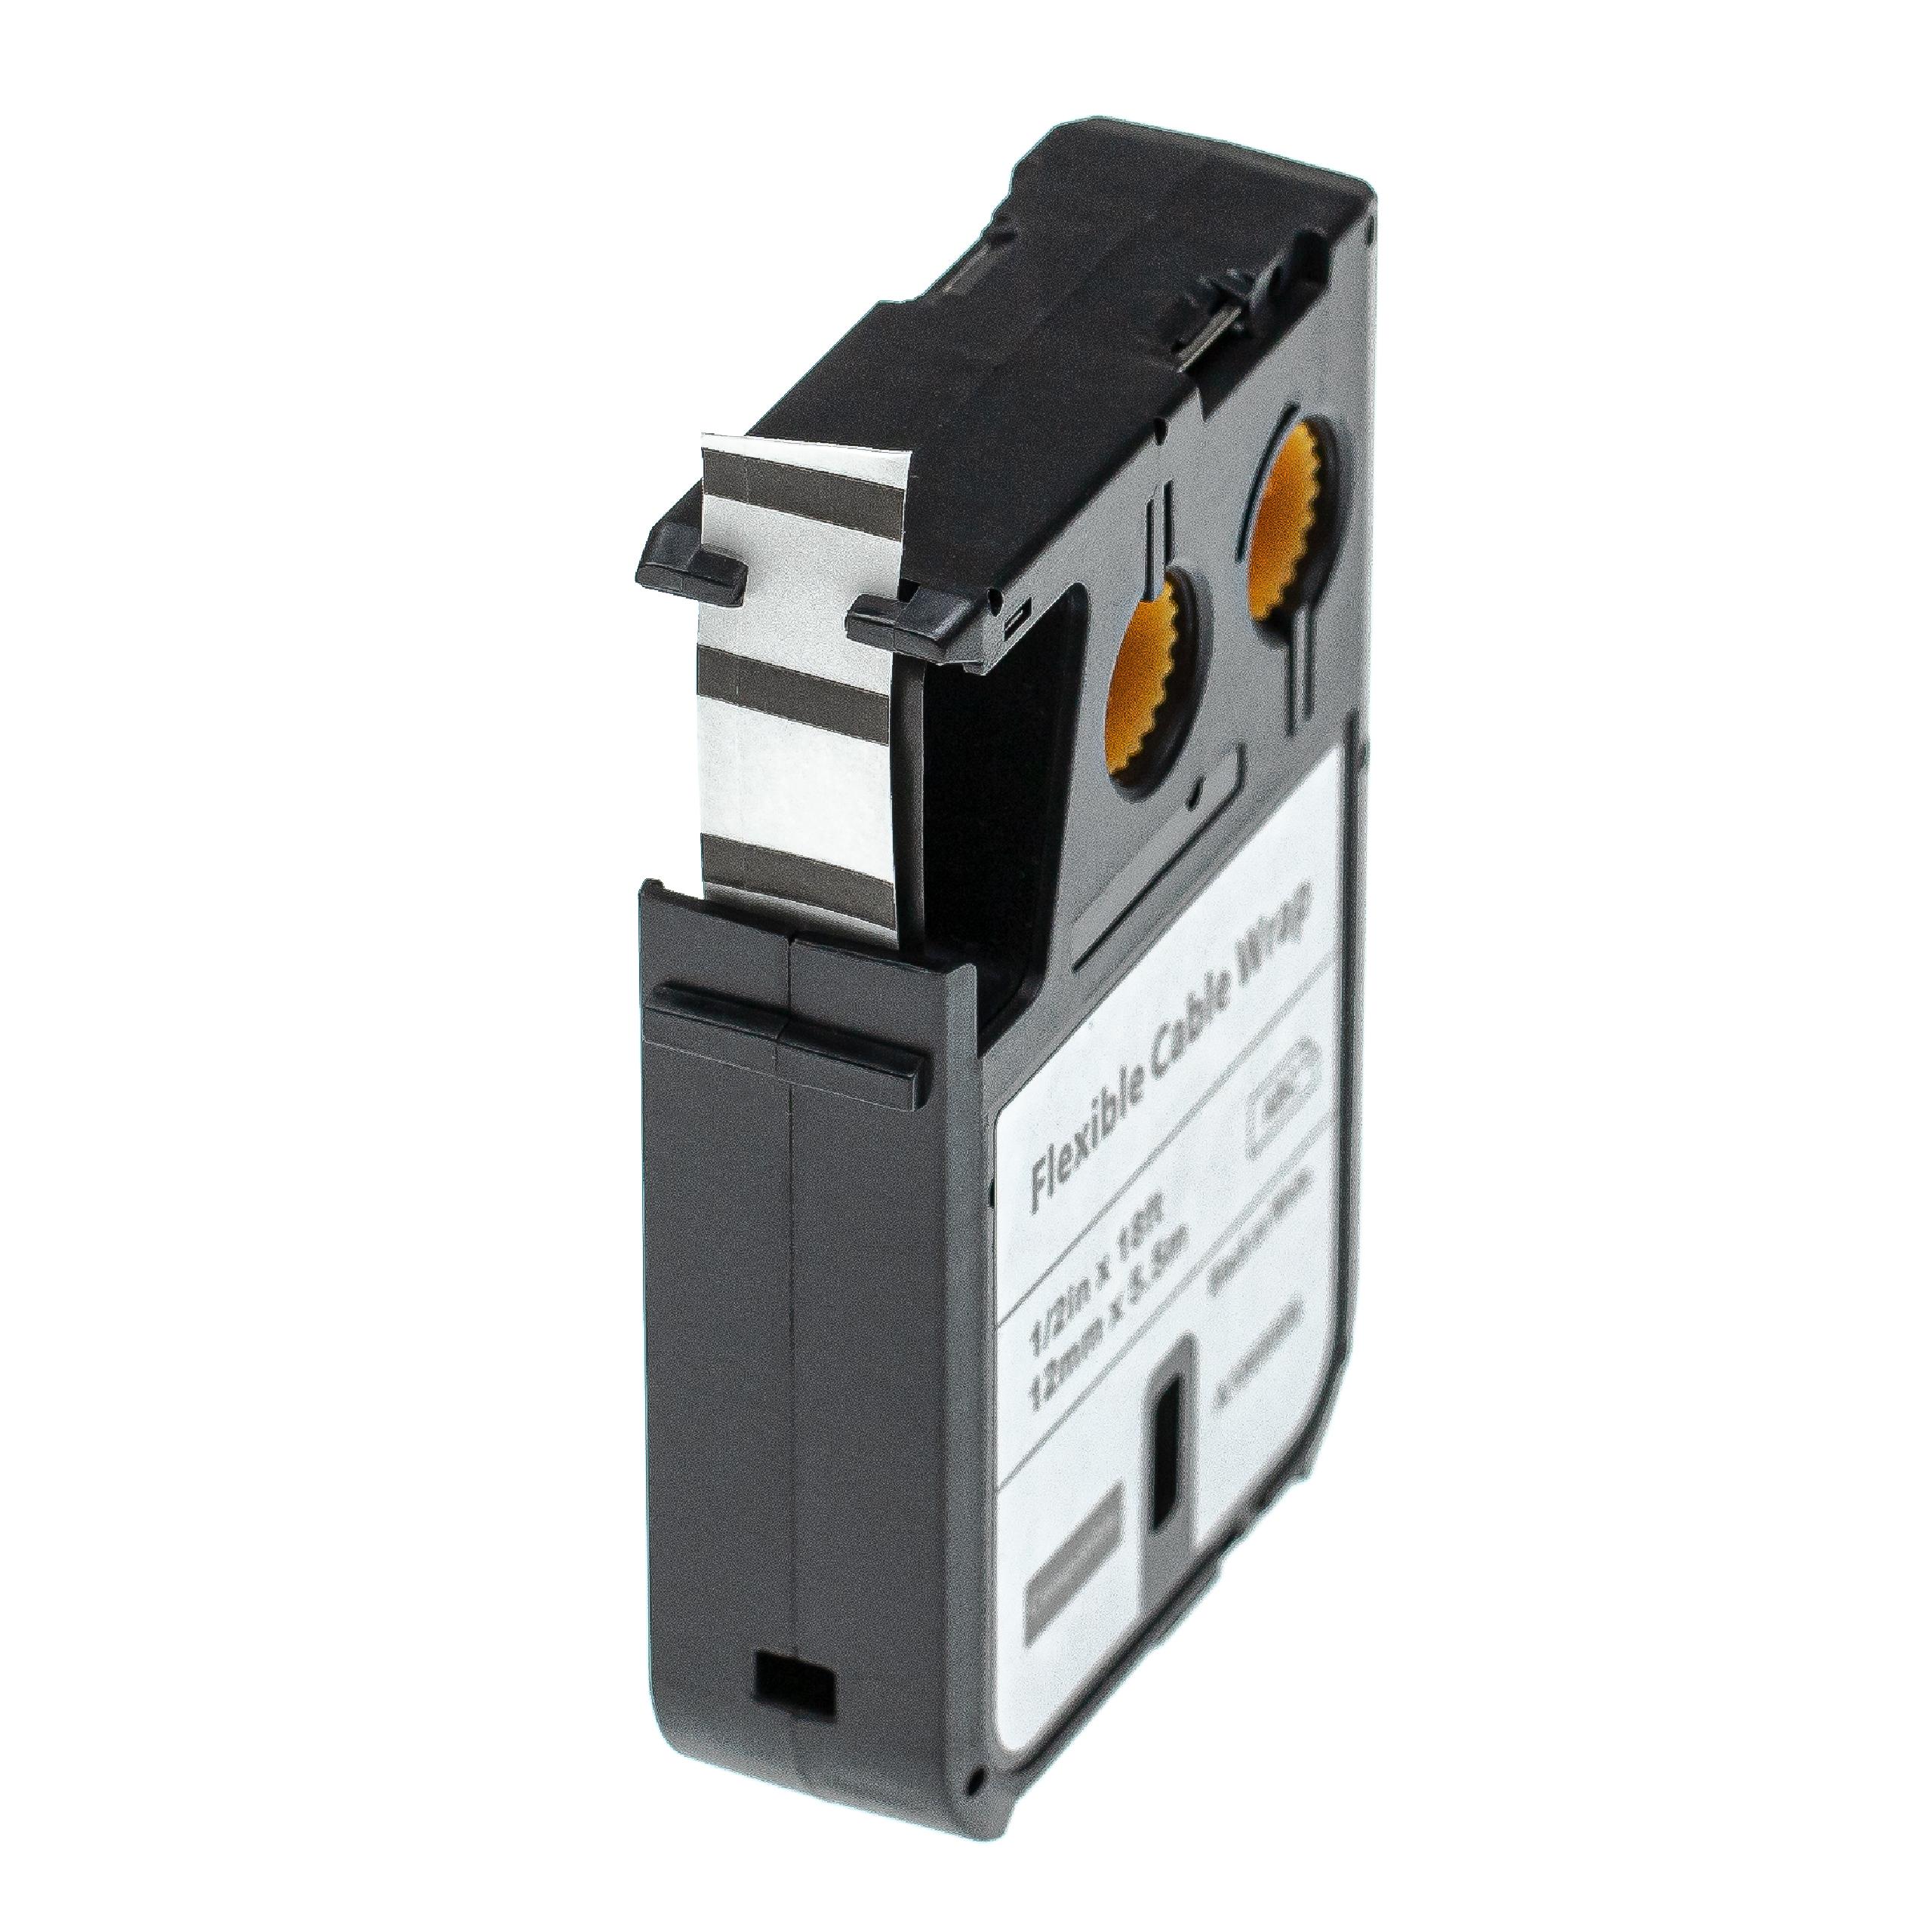 Cassetta nastro sostituisce Dymo 1868806 per etichettatrice Dymo 12mm nero su bianco, Flexible Cable Wrap